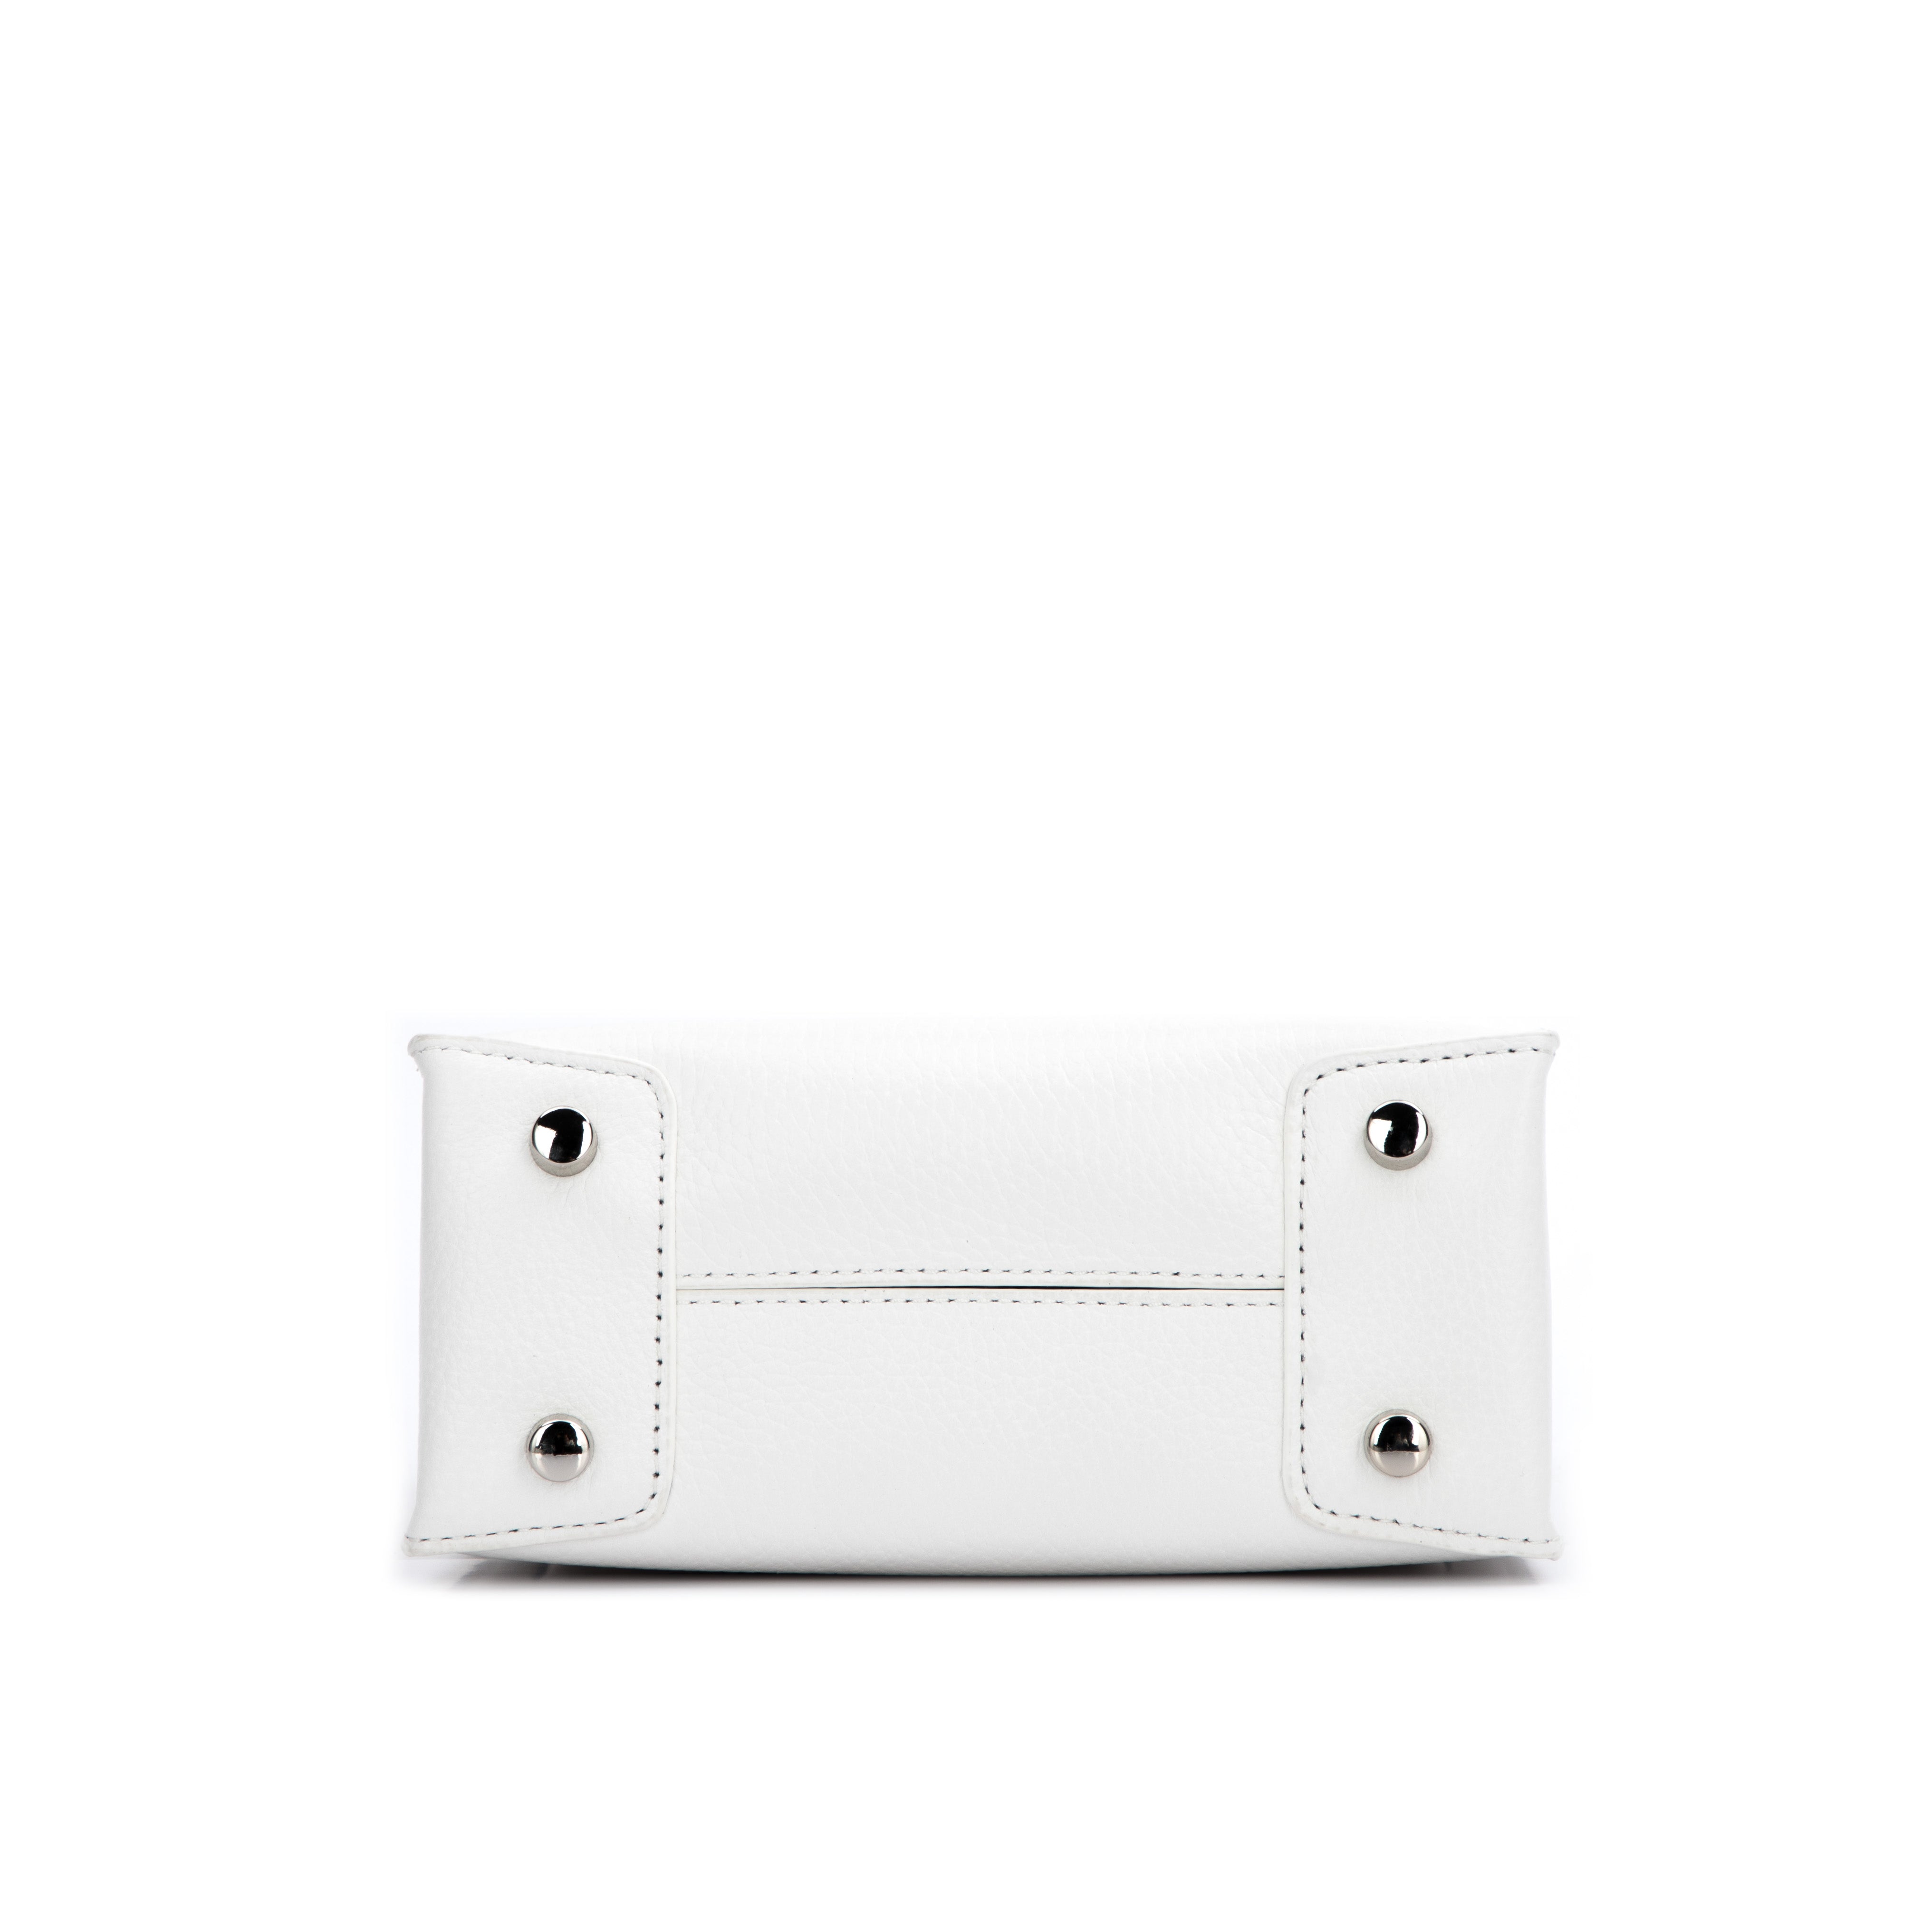 Brandon Blackwood New York - Kuei Bag - White Leather